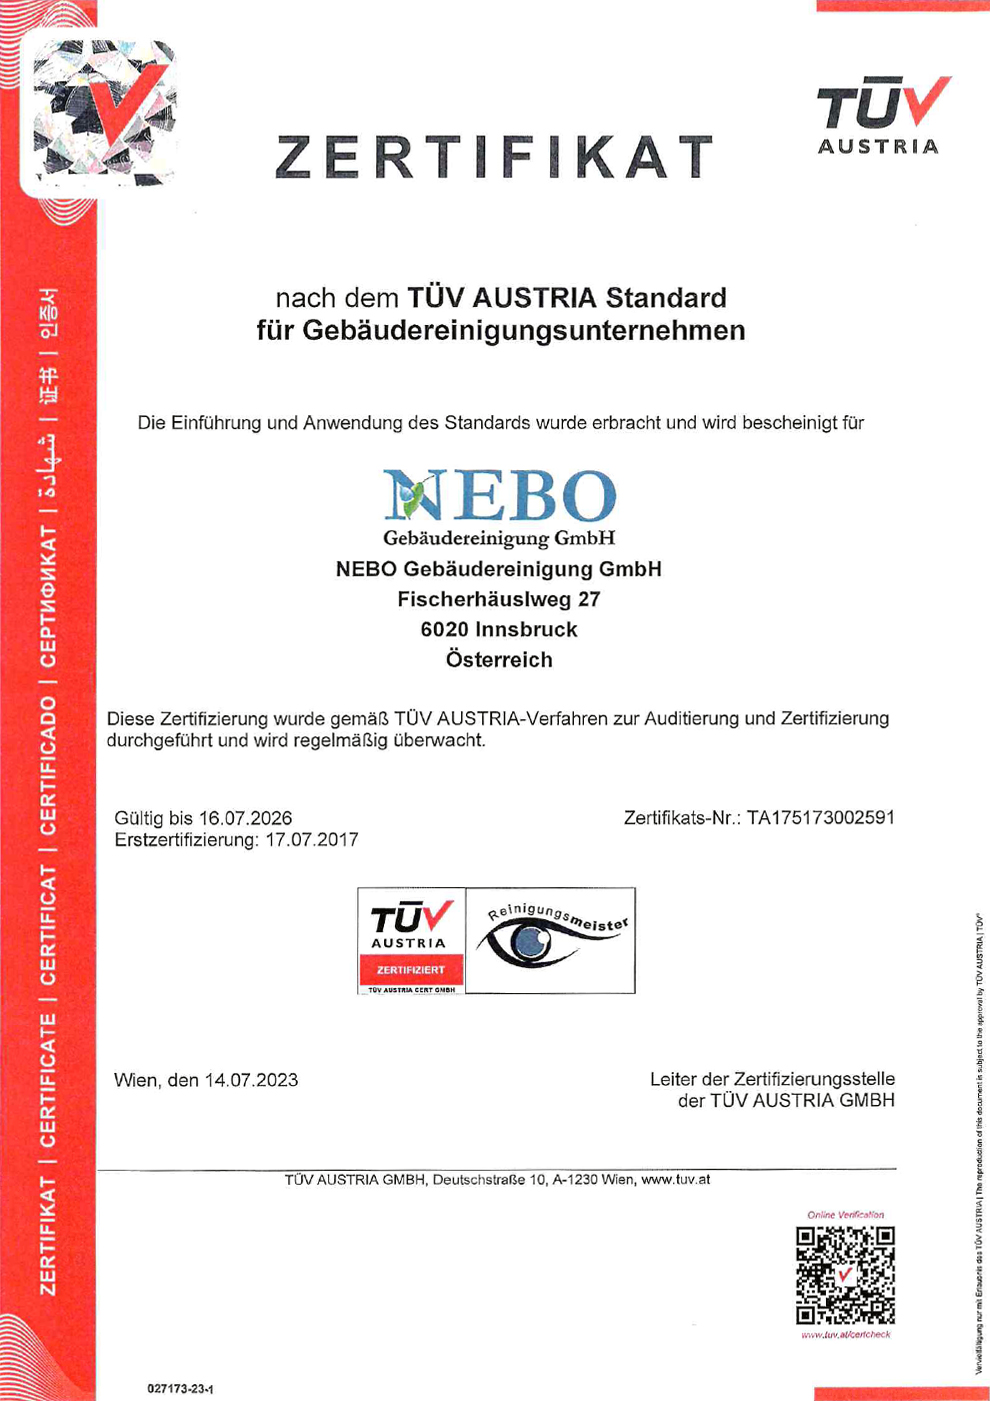 TÜV Zertifikat Austria Standart für Gebäudereinigungsunternehmen